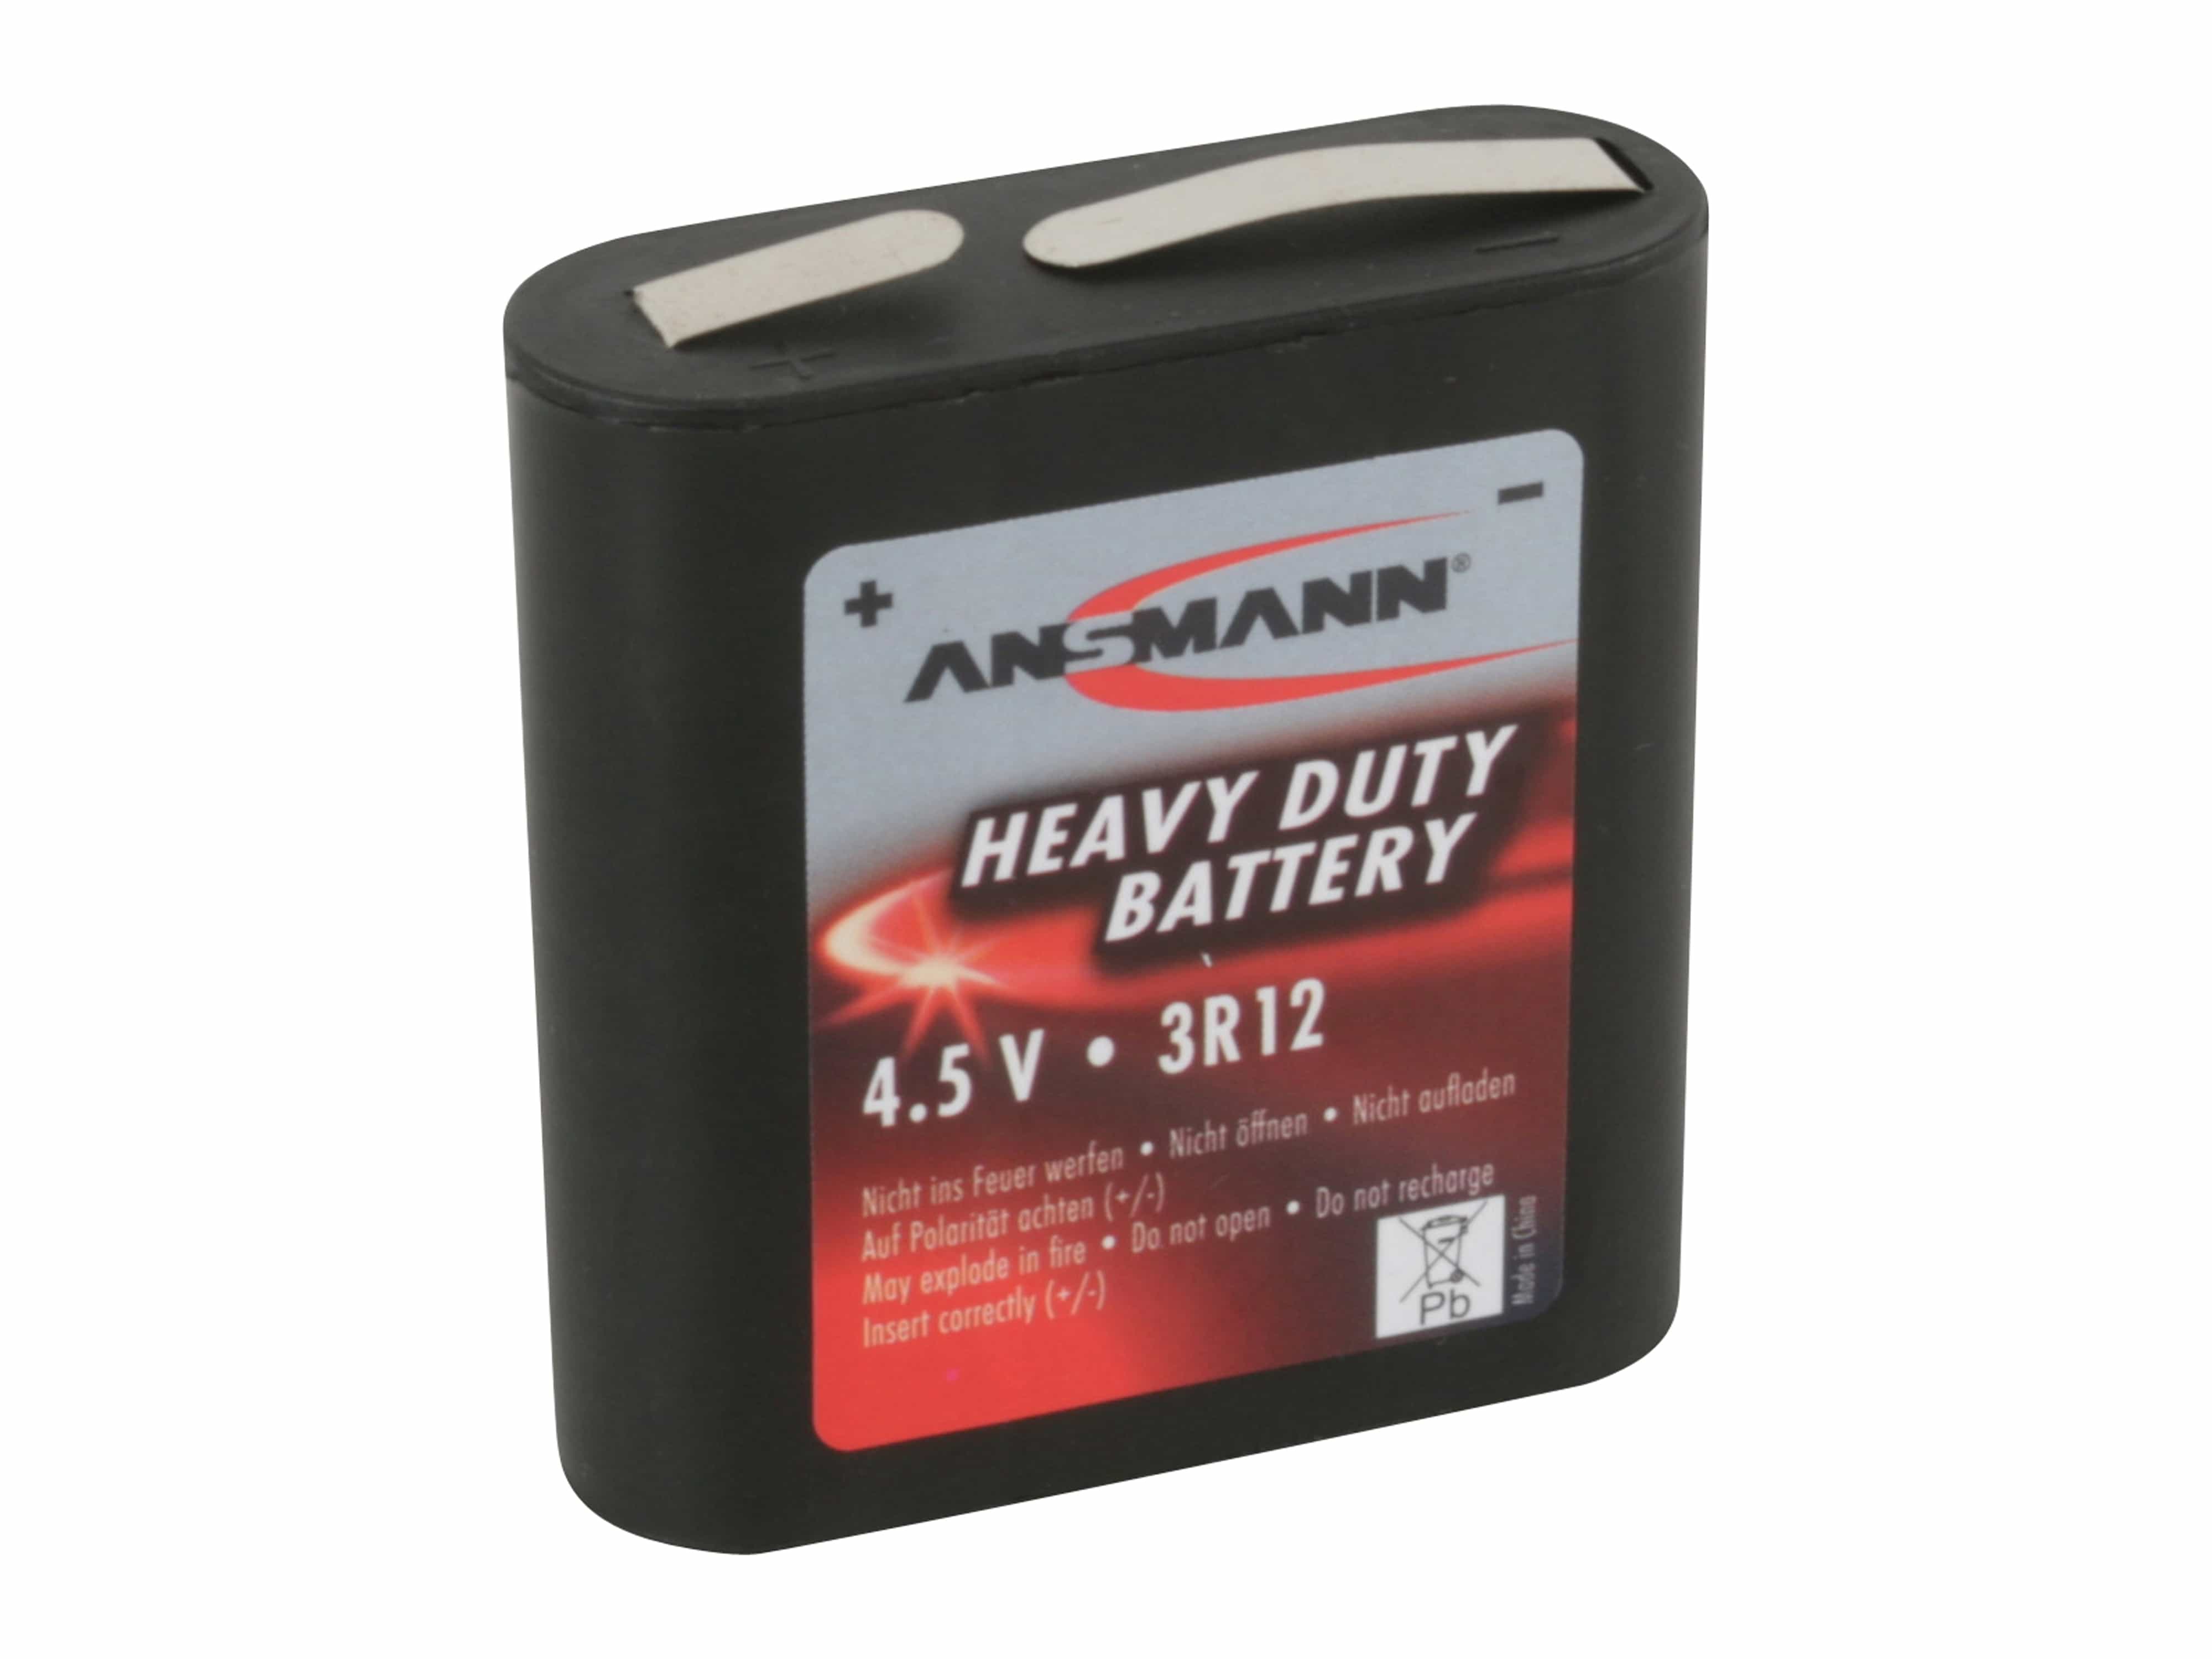 ANSMANN Flachbatterie 3R12, Zink-Kohle, 4,5 V, 2000mAh